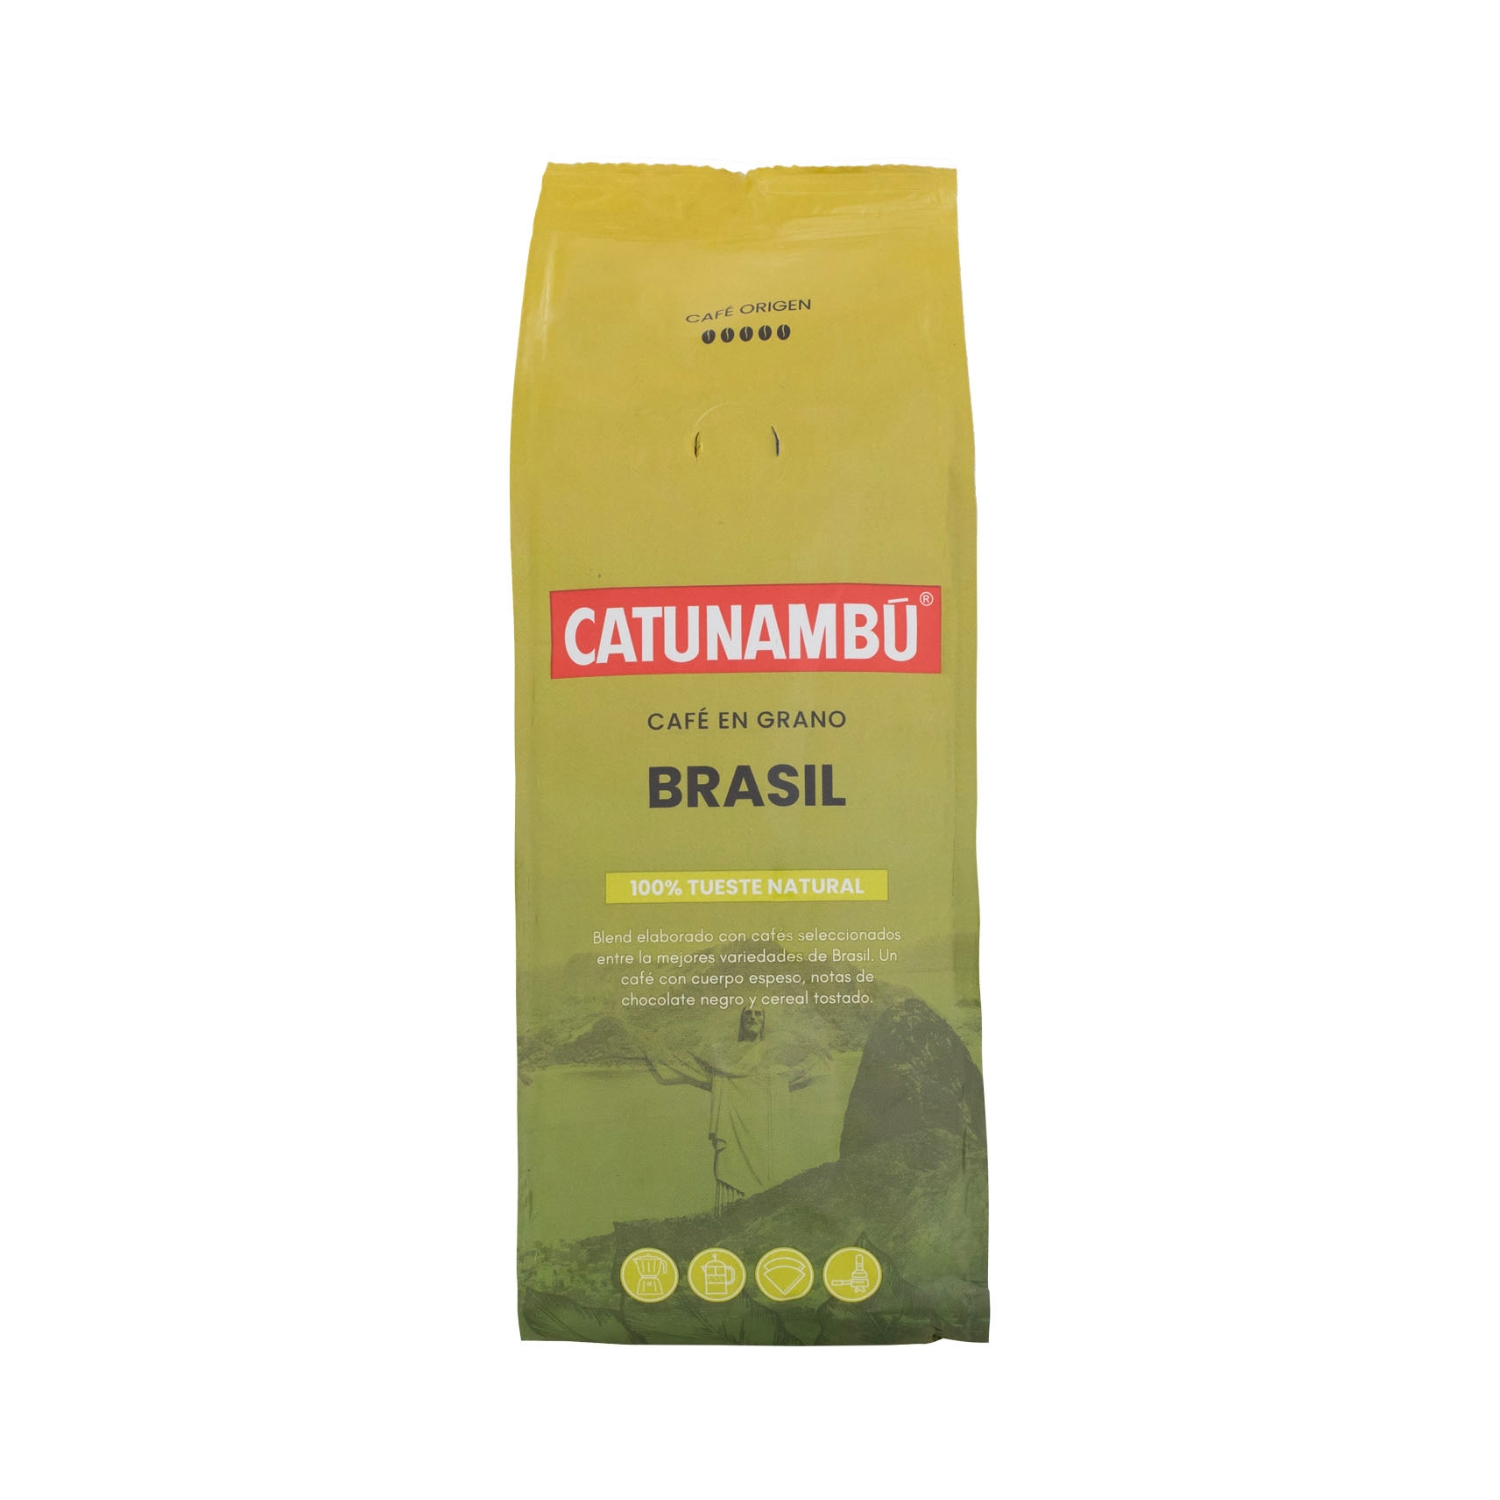 Paquete de café en grano natural Brasil Catunambú de 250gr.